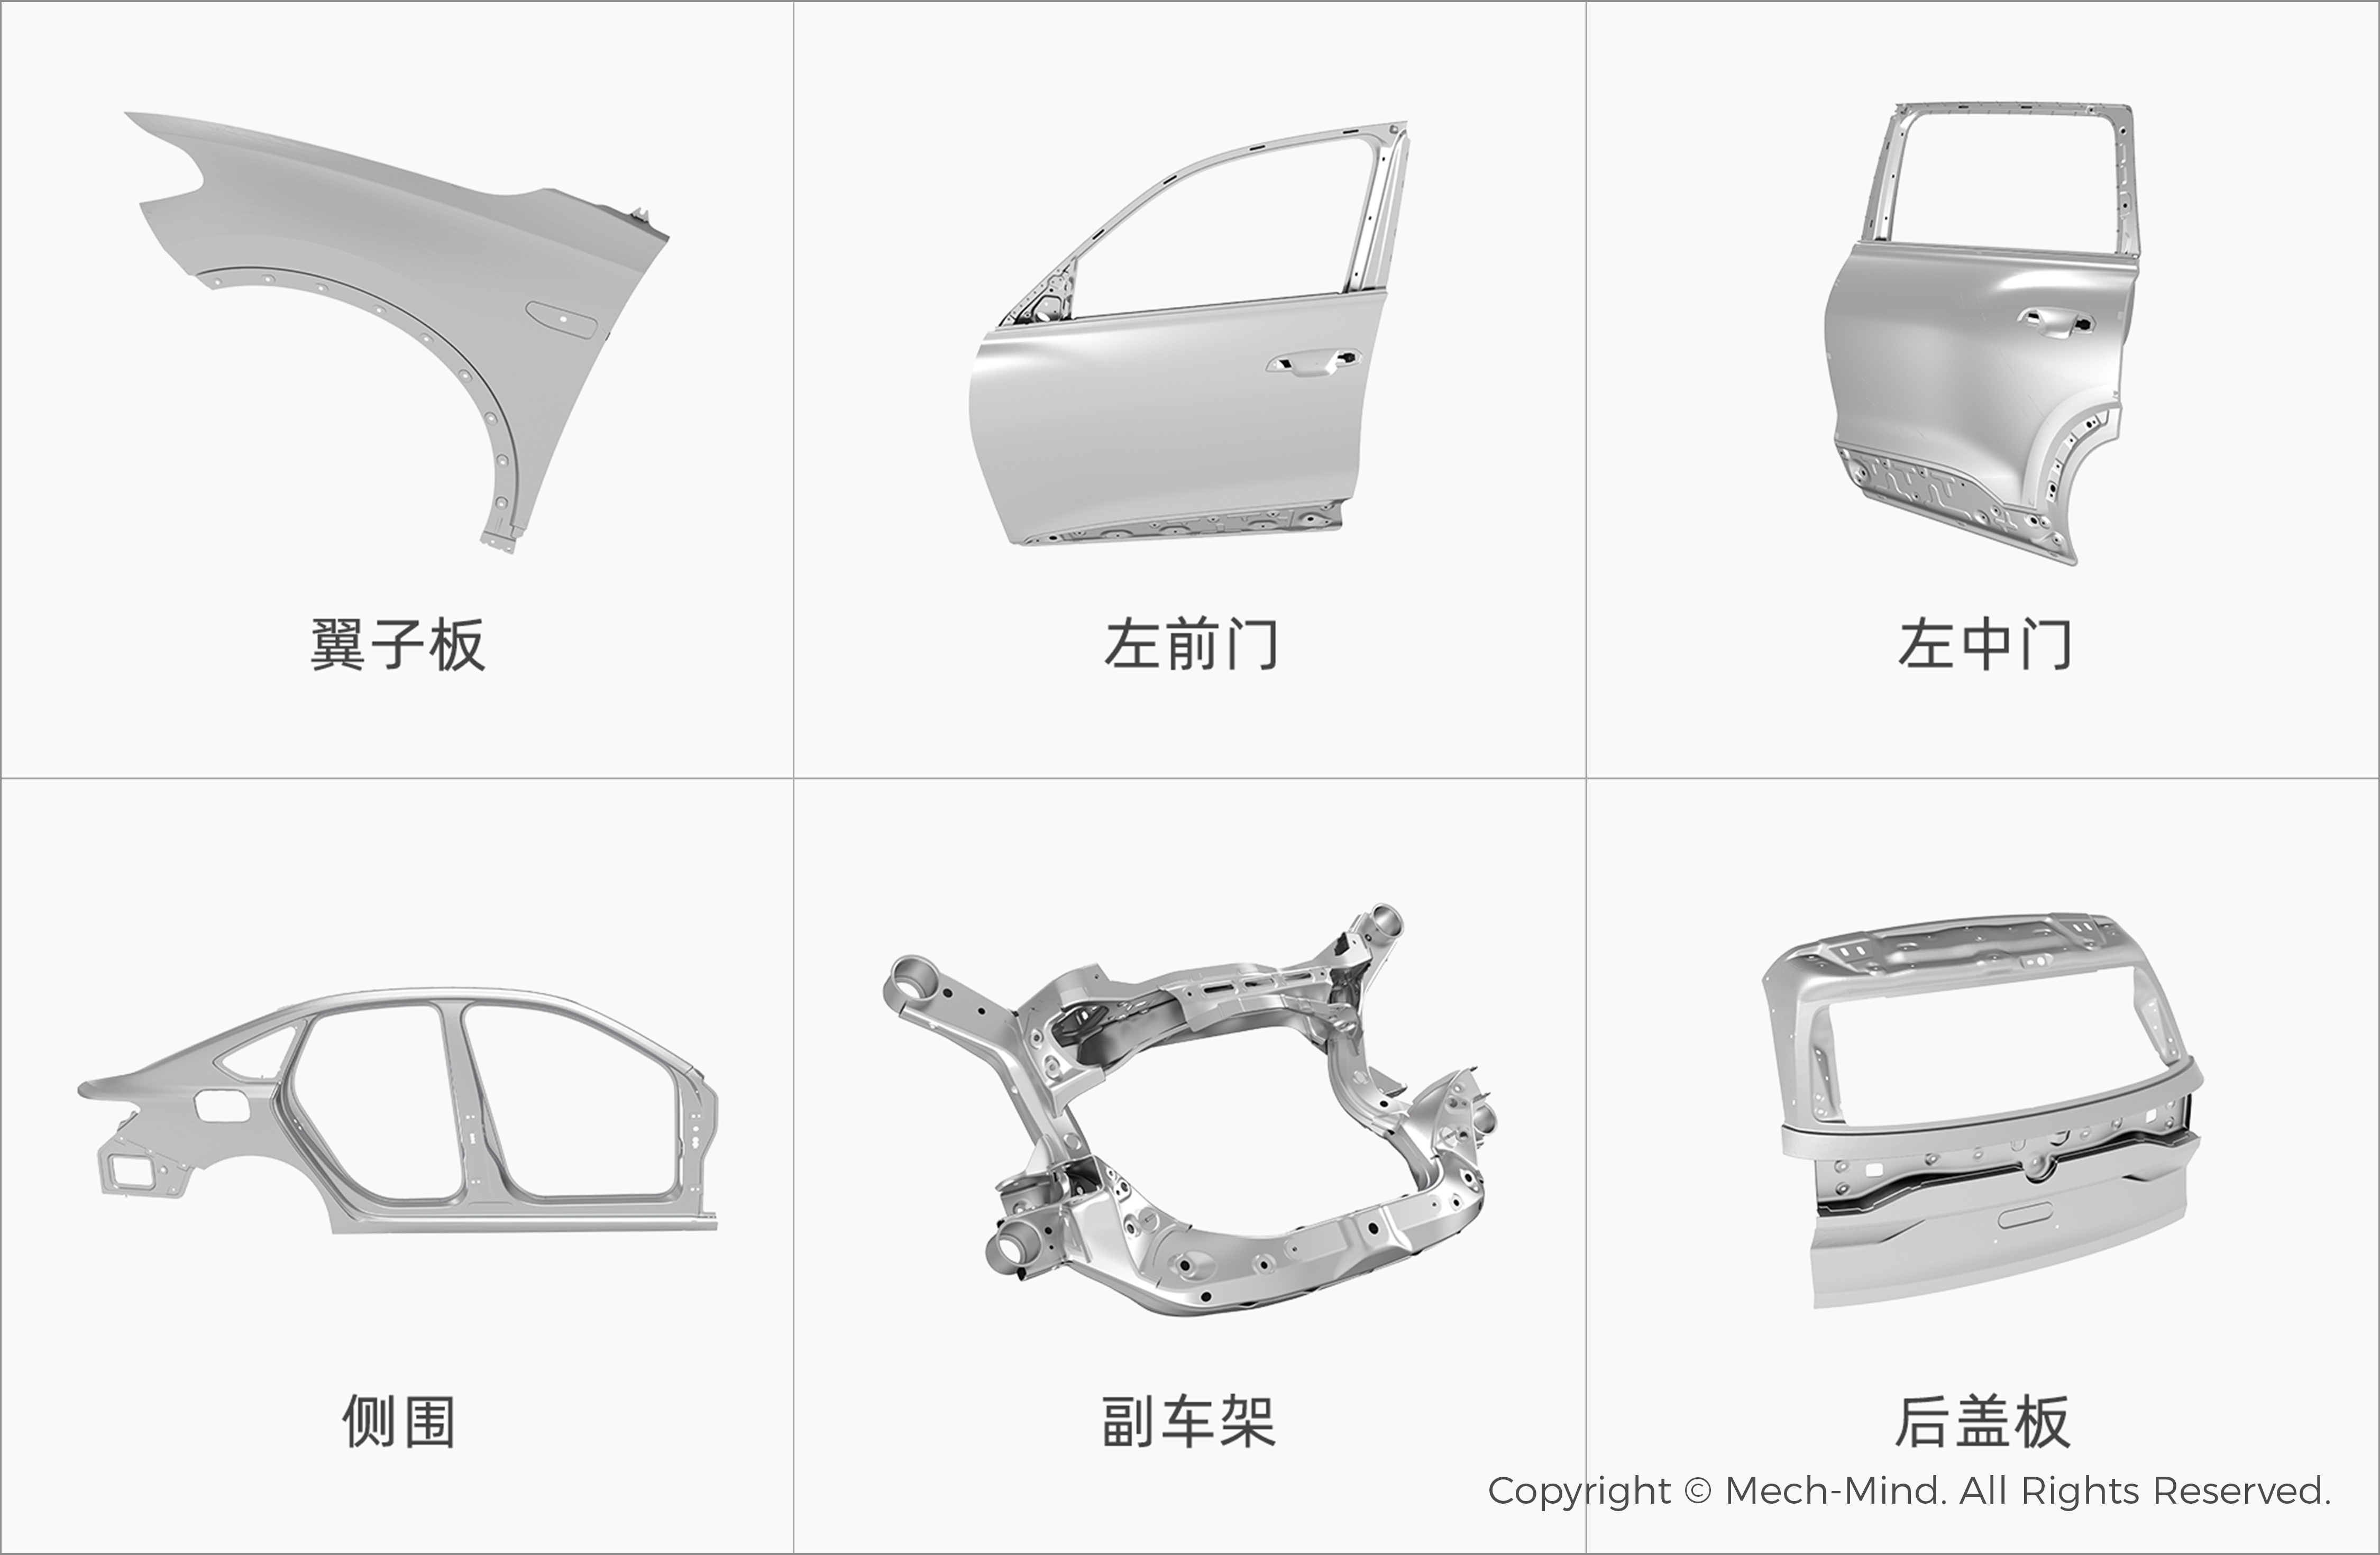 焊装车间3D视觉引导抓放件，助力汽车制造柔性、效益双重升级